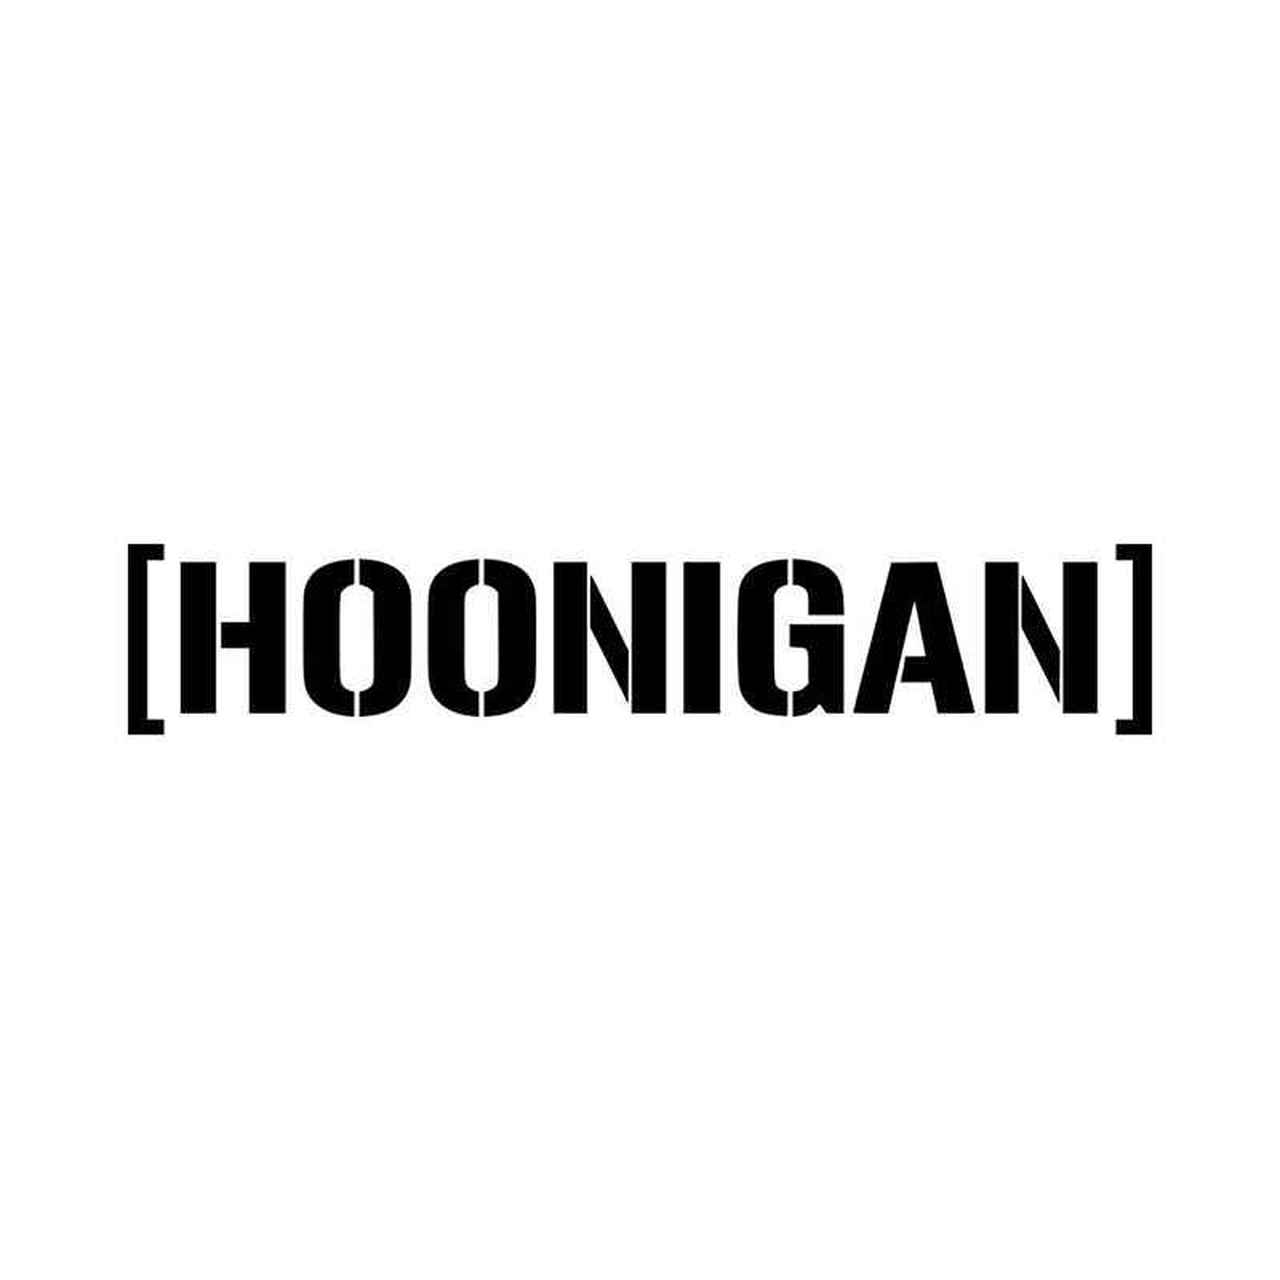 Hoonigan Logo - Hoonigan Logo Vinyl Decal Sticker